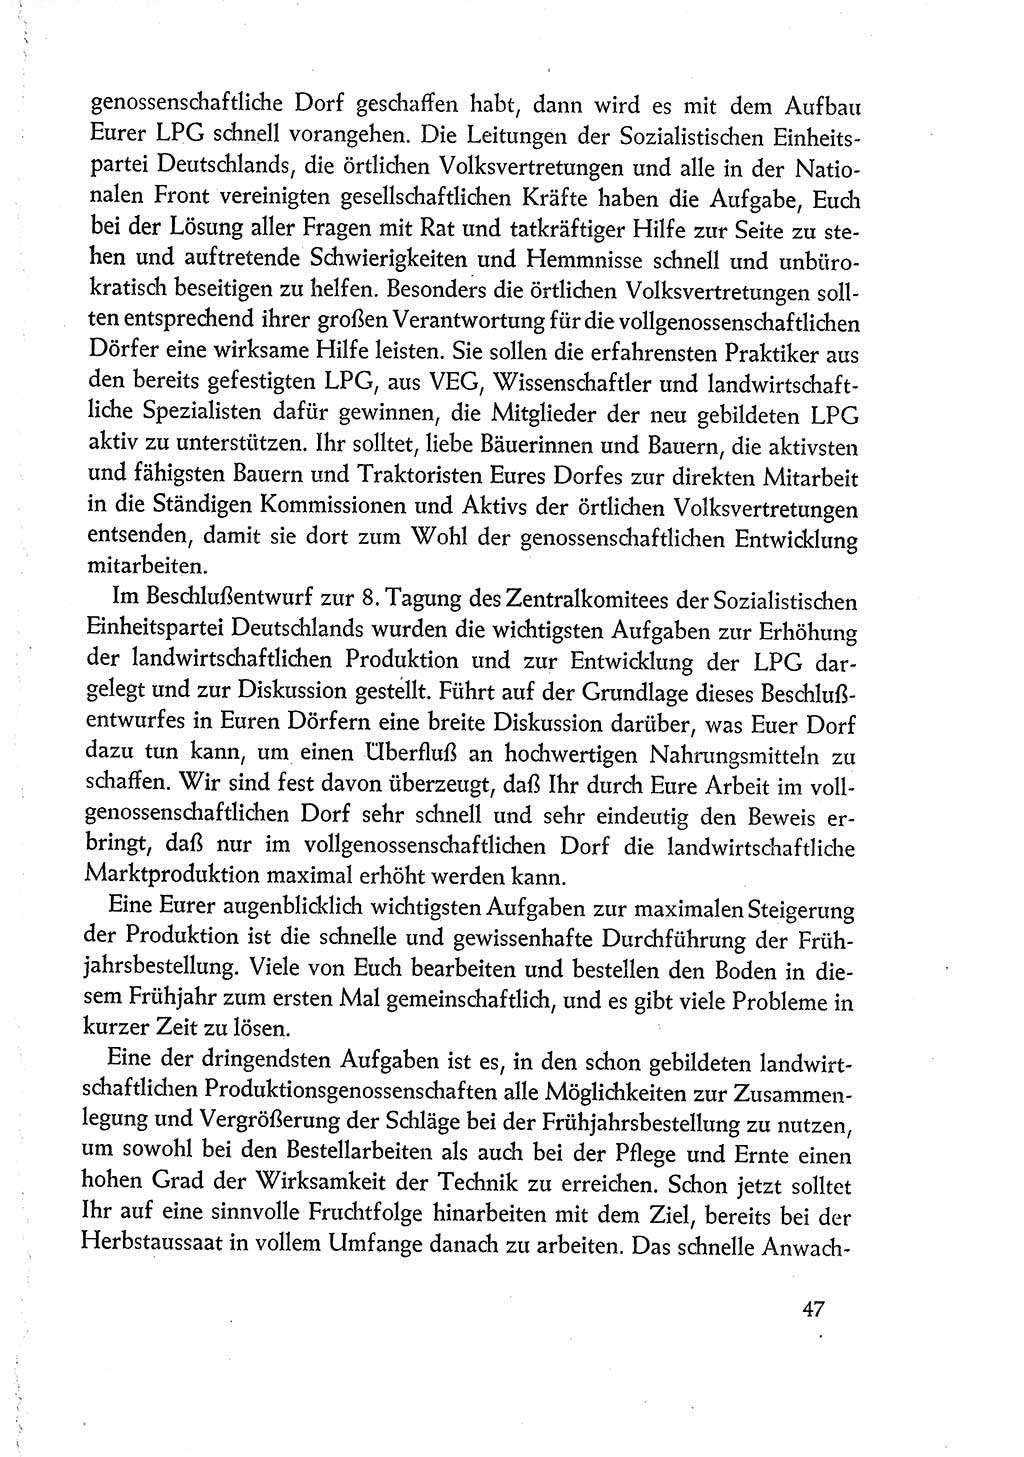 Dokumente der Sozialistischen Einheitspartei Deutschlands (SED) [Deutsche Demokratische Republik (DDR)] 1960-1961, Seite 47 (Dok. SED DDR 1960-1961, S. 47)